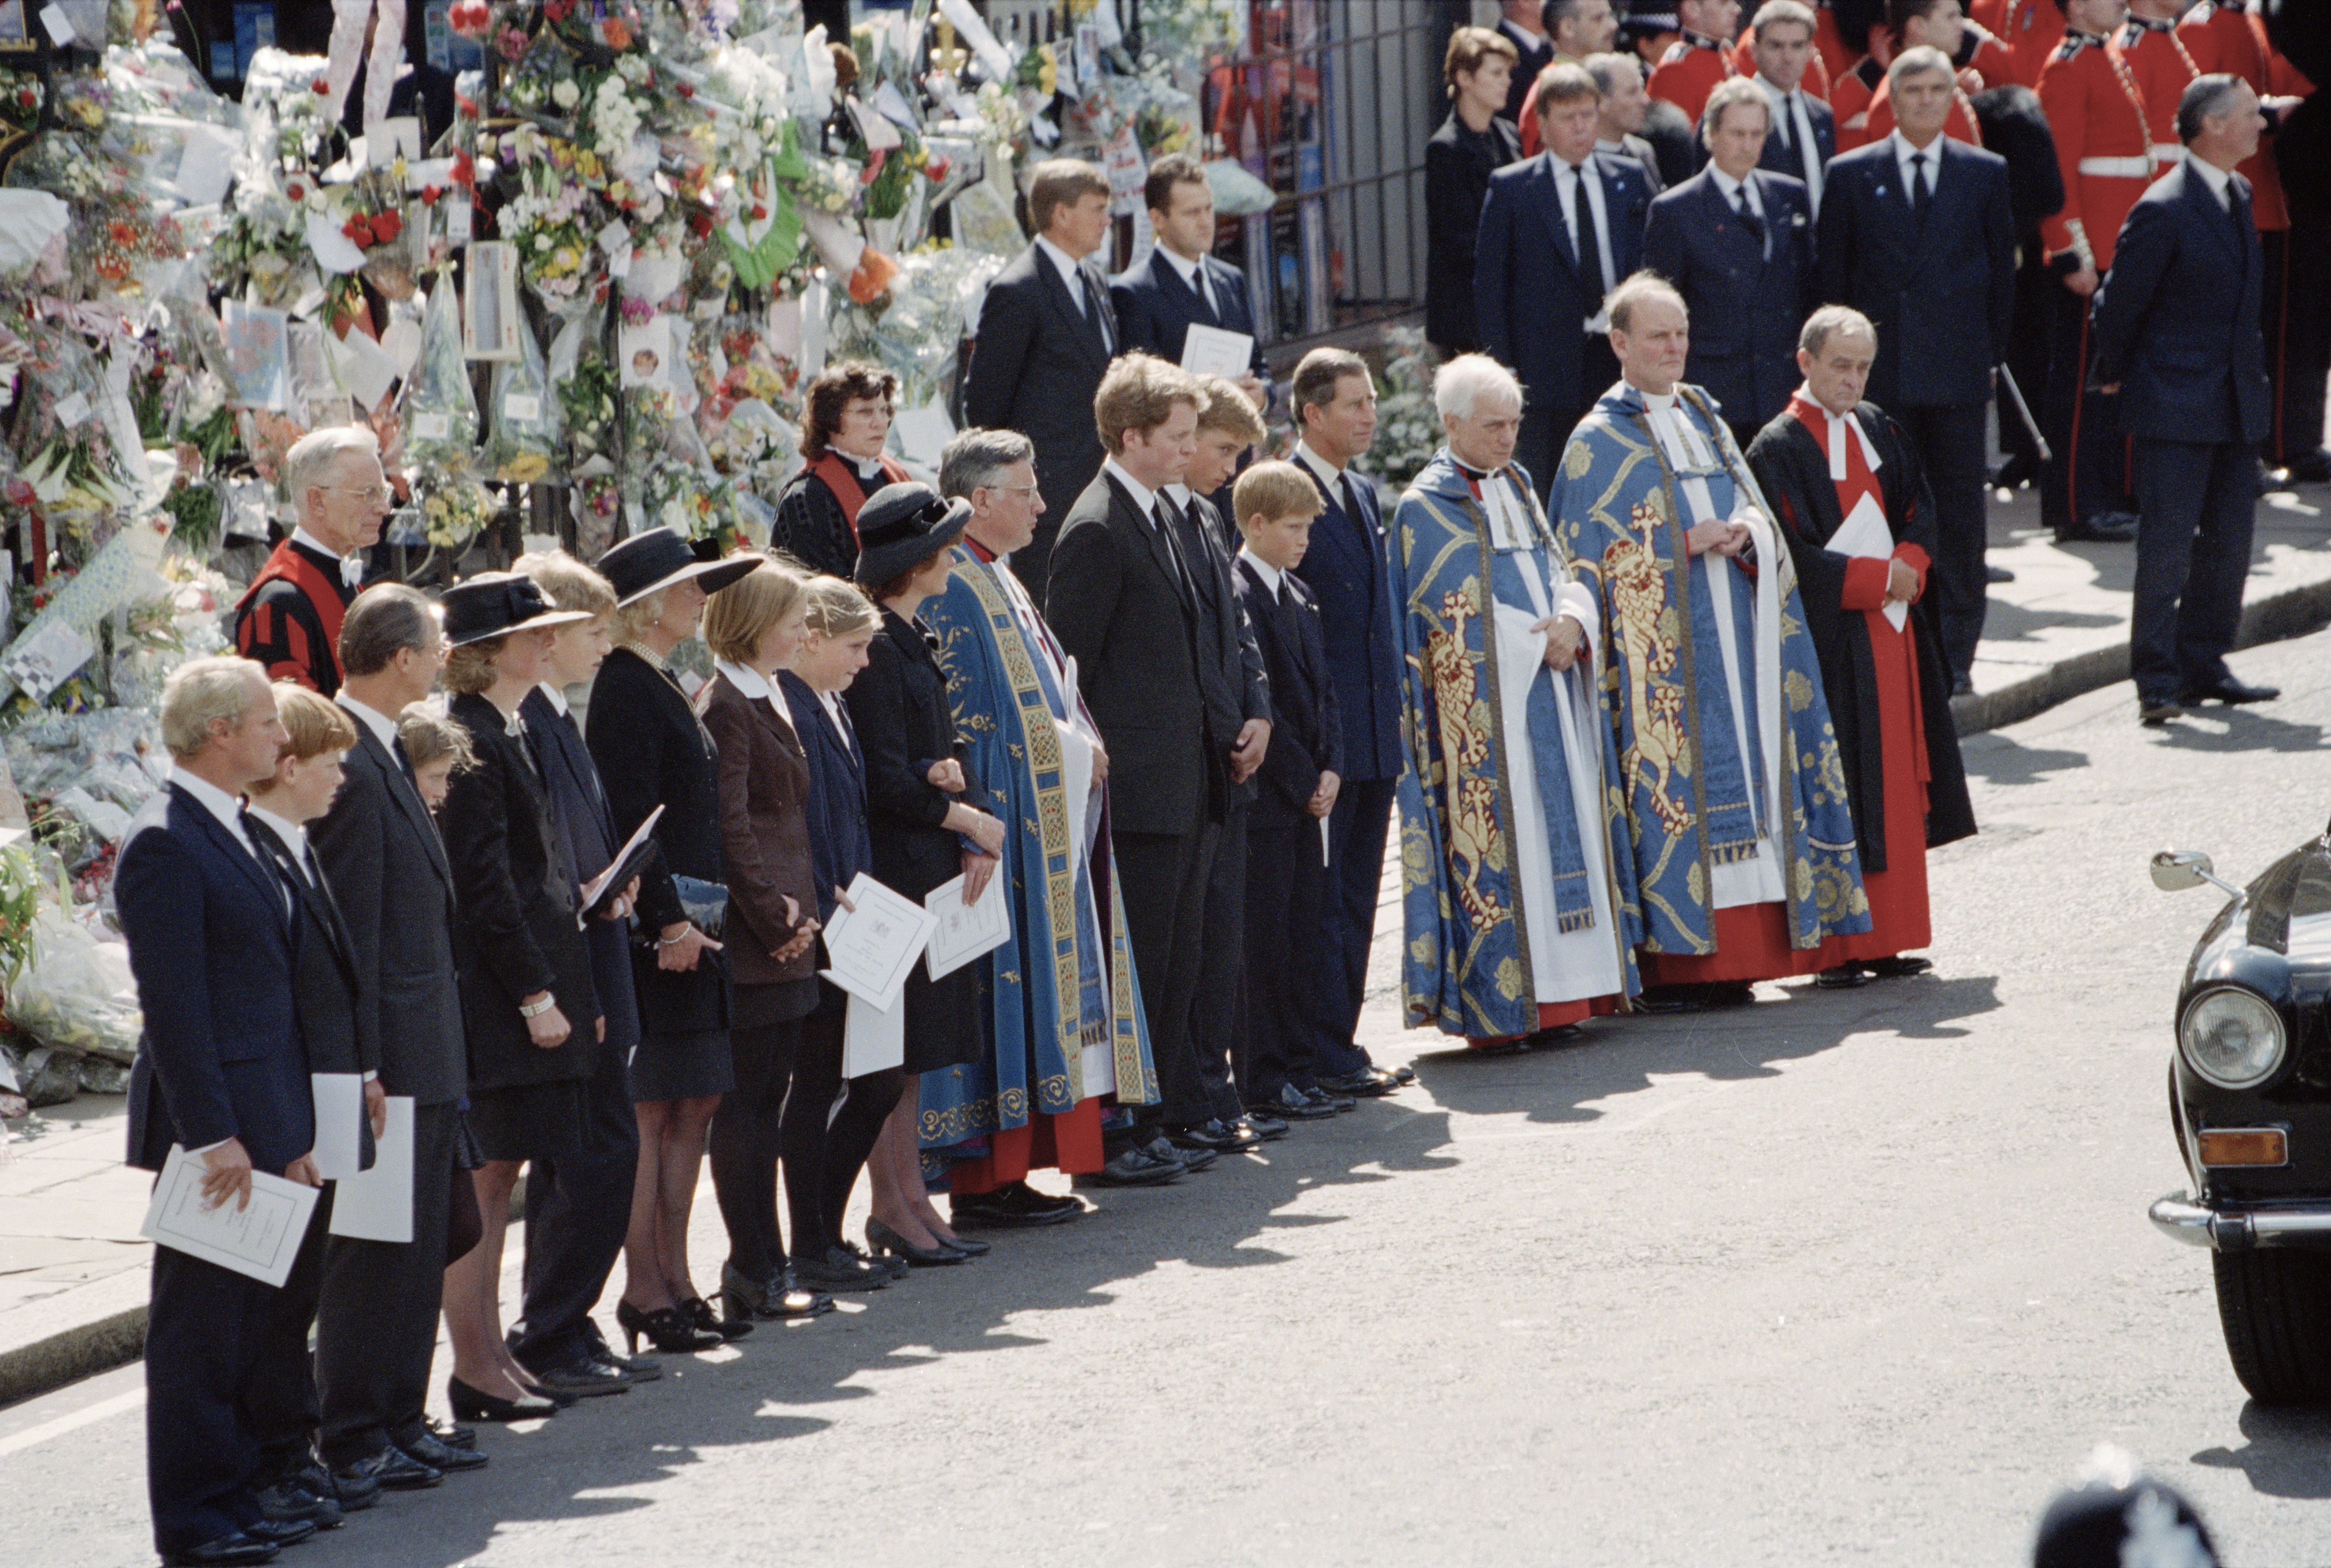 Les funérailles de Diana, Princesse de Galles à l'abbaye de Westminster à Londres, le 6 septembre 1997. L'alignement des membres de la famille lorsque le cercueil quitte l'abbaye après la cérémonie. |Photo : Getty Images